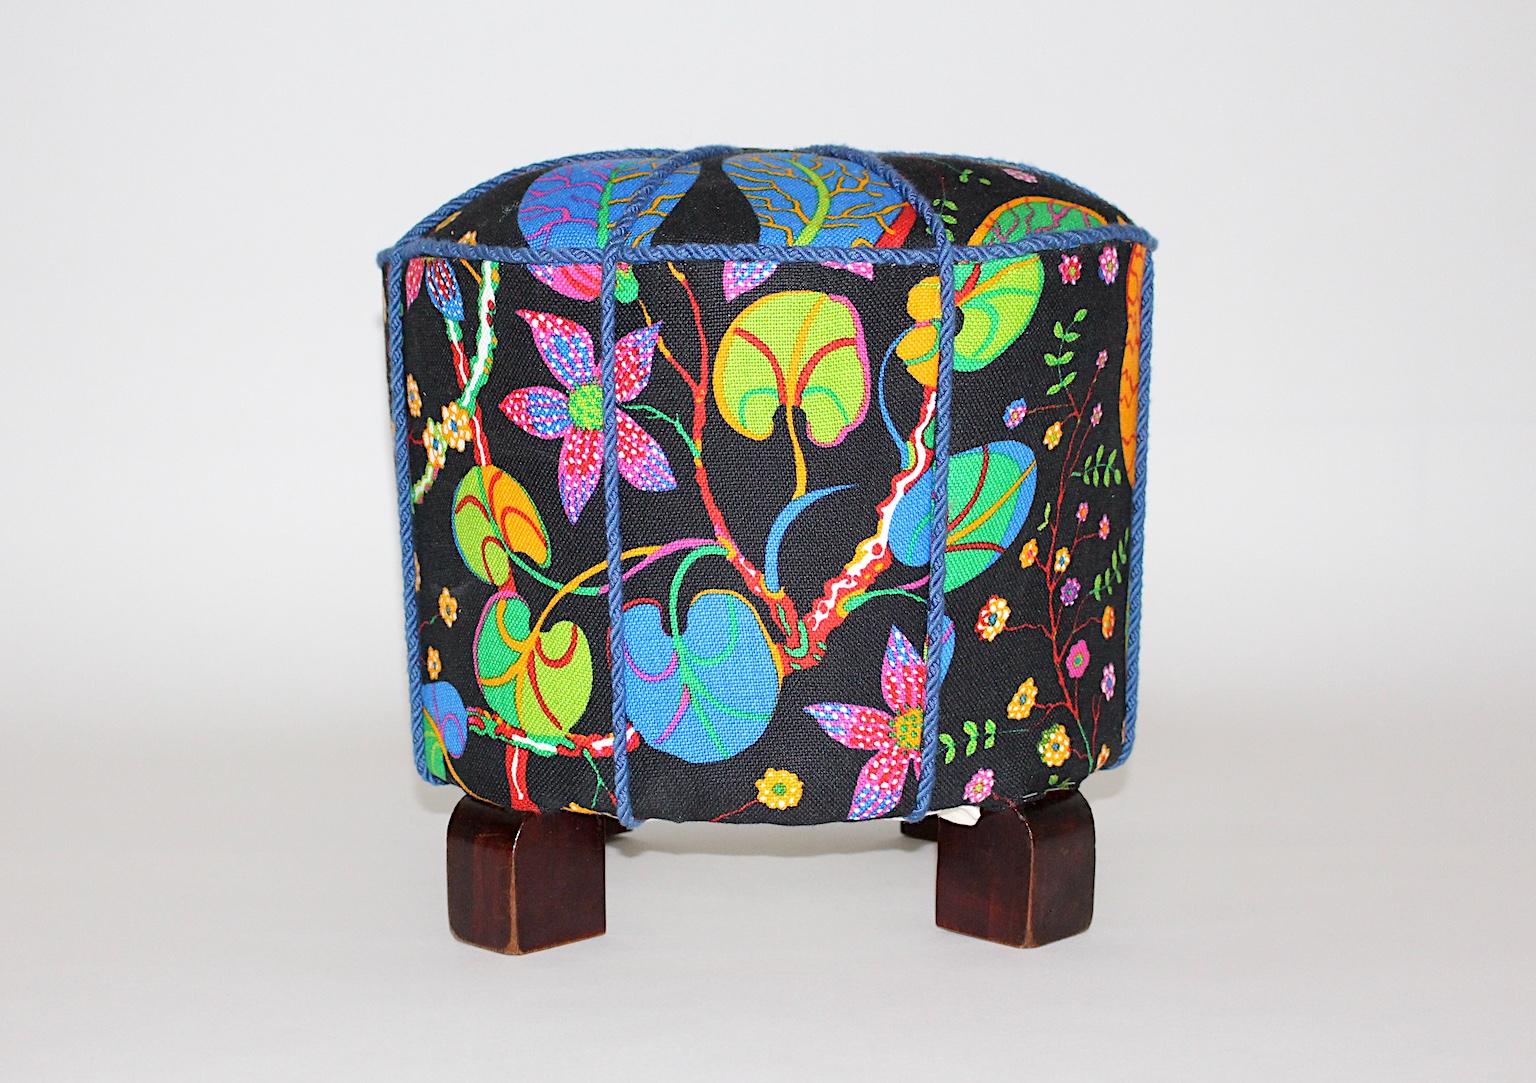 Pouf ou tabouret Art Déco vintage avec pieds en bois de hêtre, qui a été retapissé et recouvert d'un magnifique tissu multicolore. Ce tissu a été conçu dans les années 1930 par Josef Frank et est désormais fabriqué par Svenskt Tenn. Le tissu est